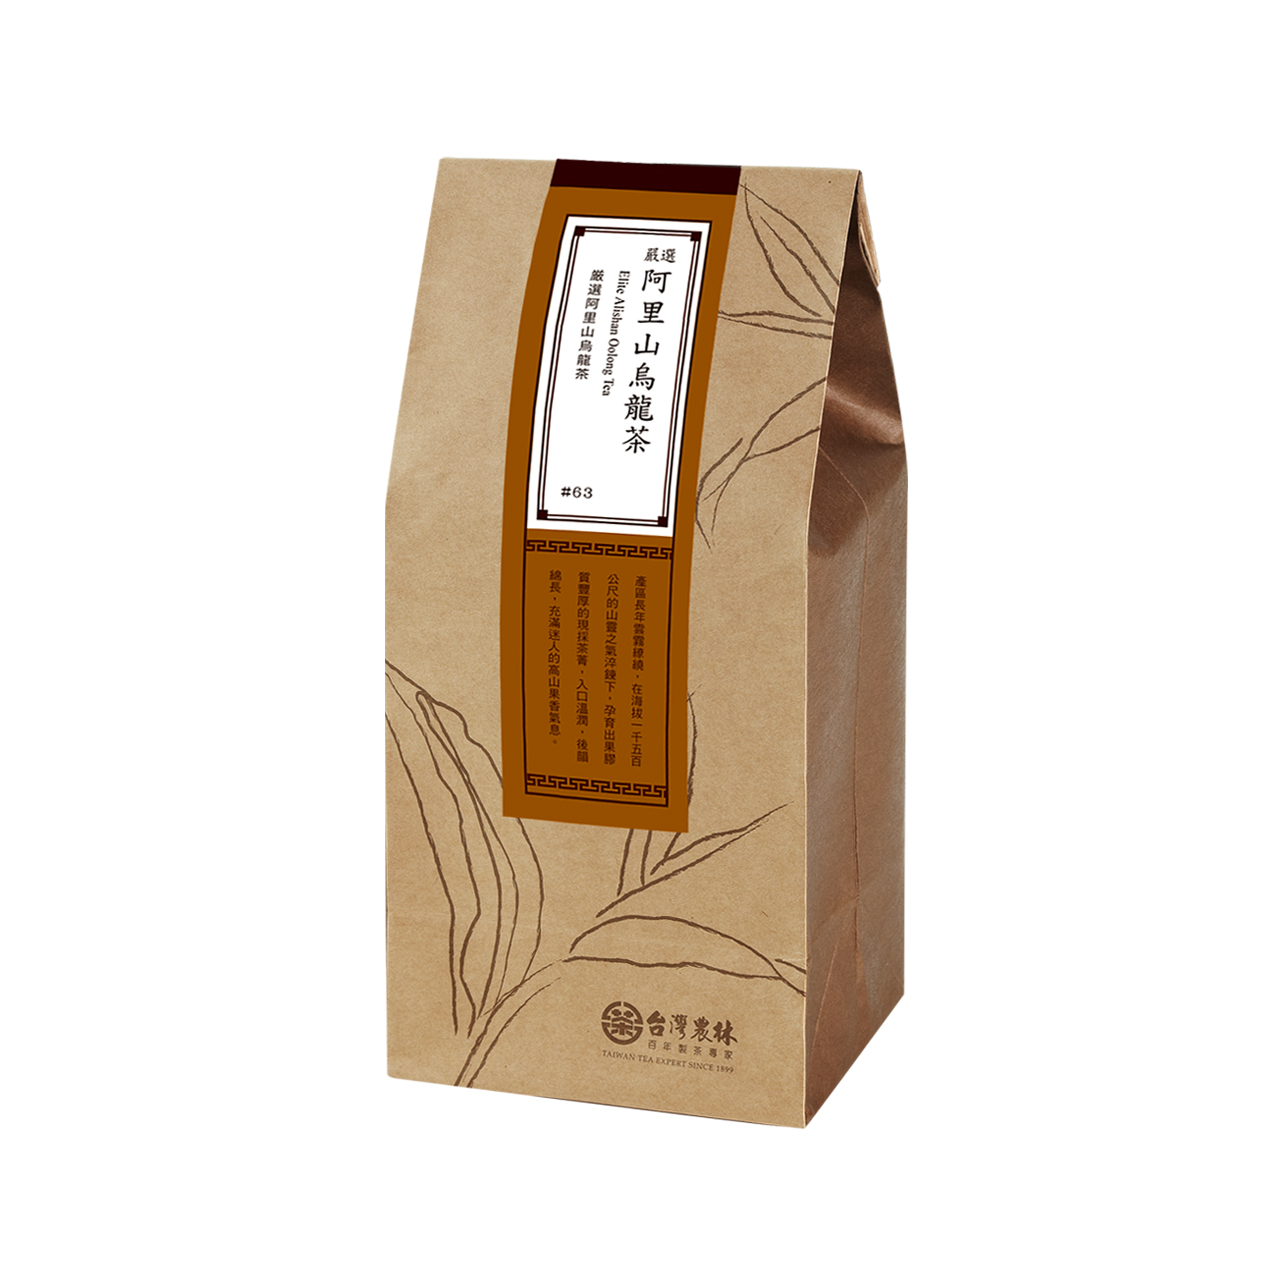 Refill-Elite Alishan Oolong Tea